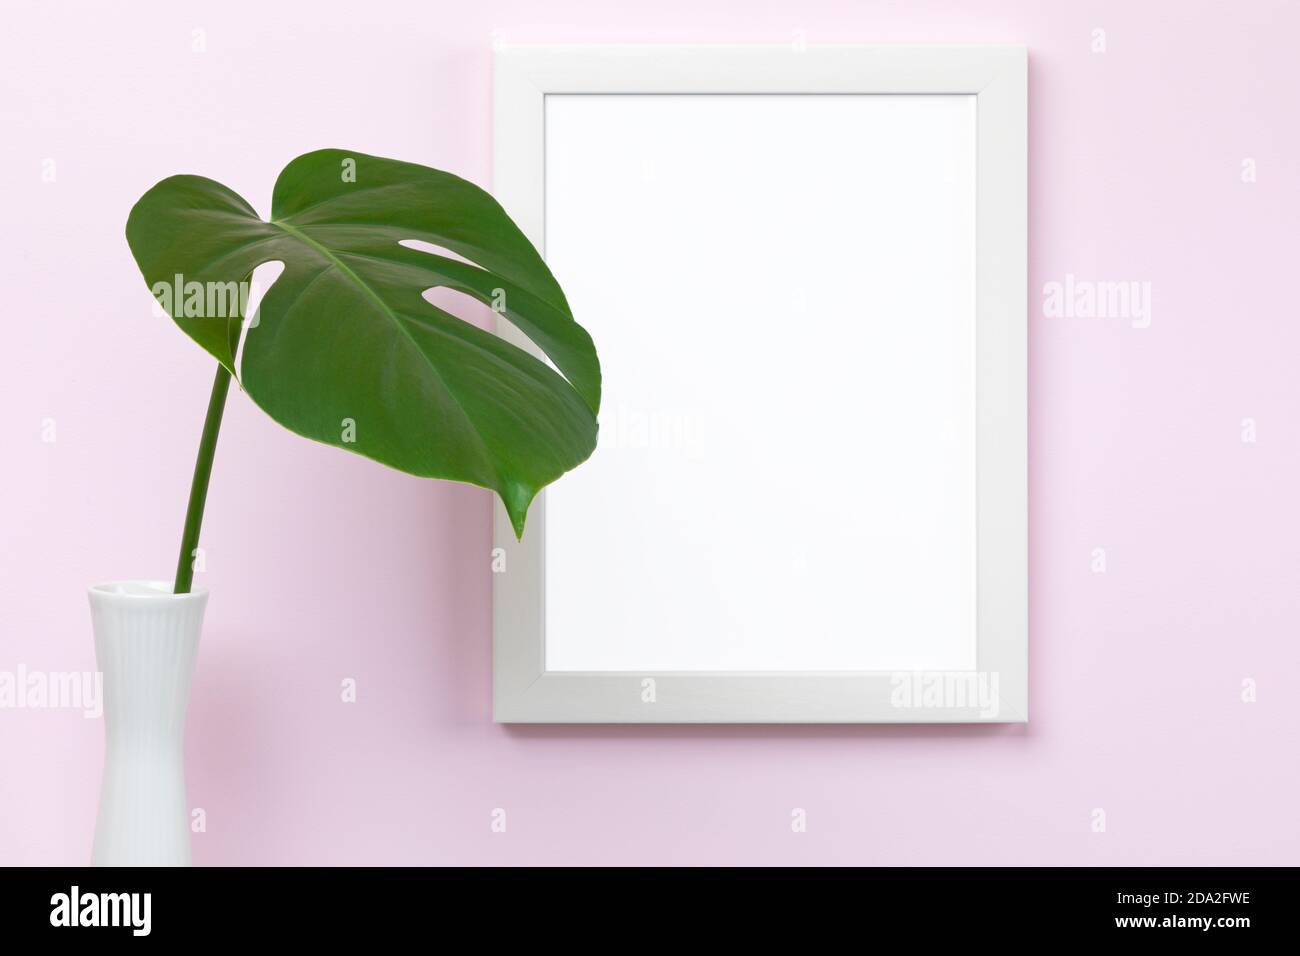 Mascherina verticale bianca del mockup del quadro sulla parete rosa con vaso e foglia di monstera davanti, area vuota del quadro isolata con tracciato di ritaglio Foto Stock